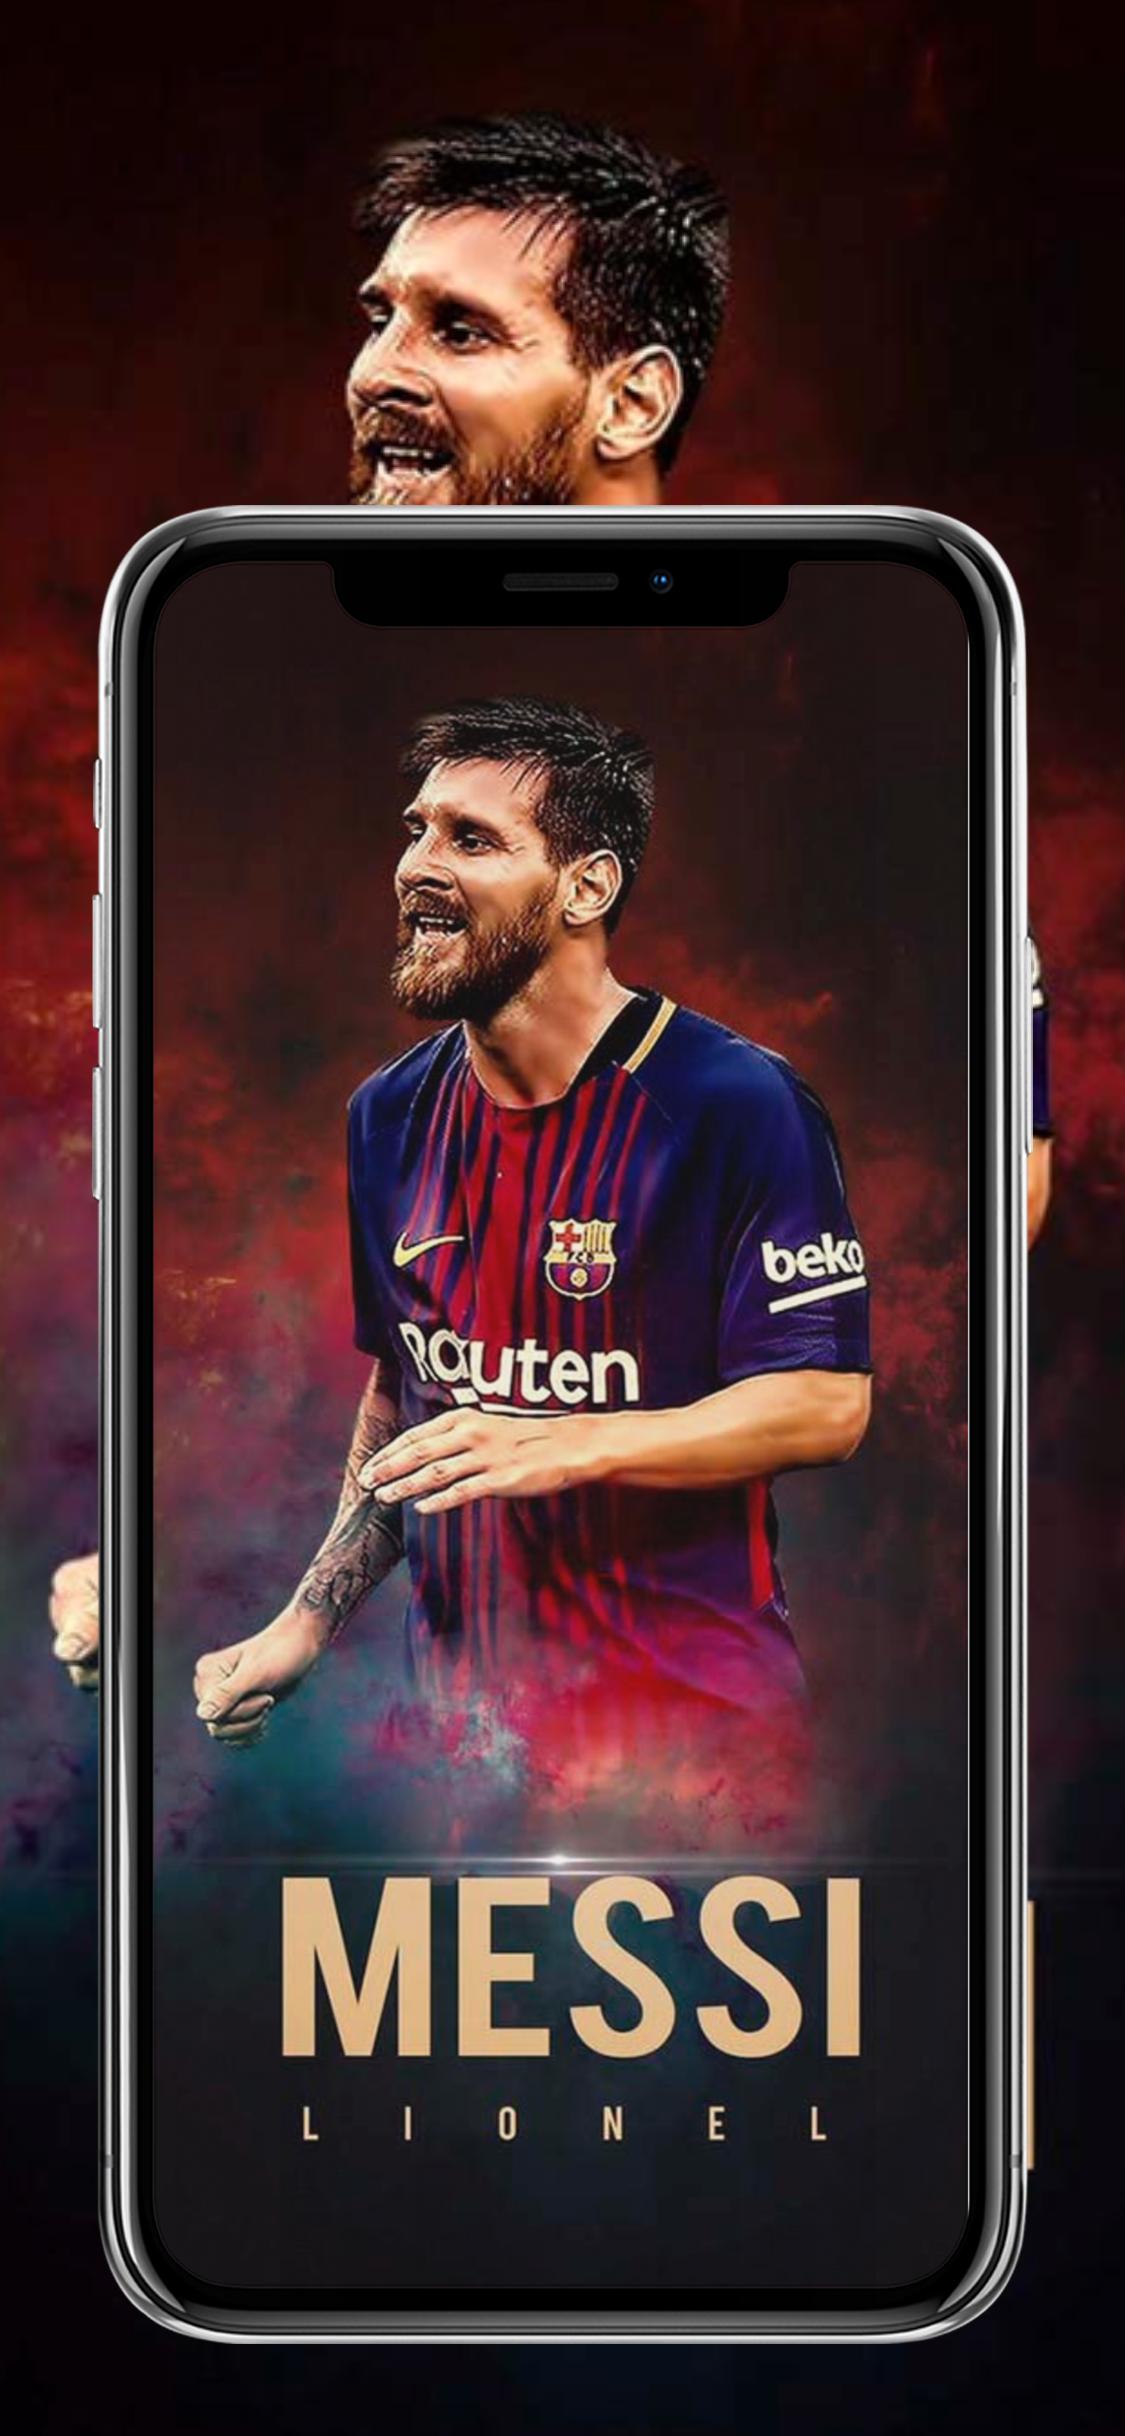 Hình nền Lionel Messi là sự lựa chọn hoàn hảo cho những người yêu bóng đá và Messi. Tận hưởng các thiết kế độc đáo với những hình ảnh đầy sáng tạo và chất lượng cao.